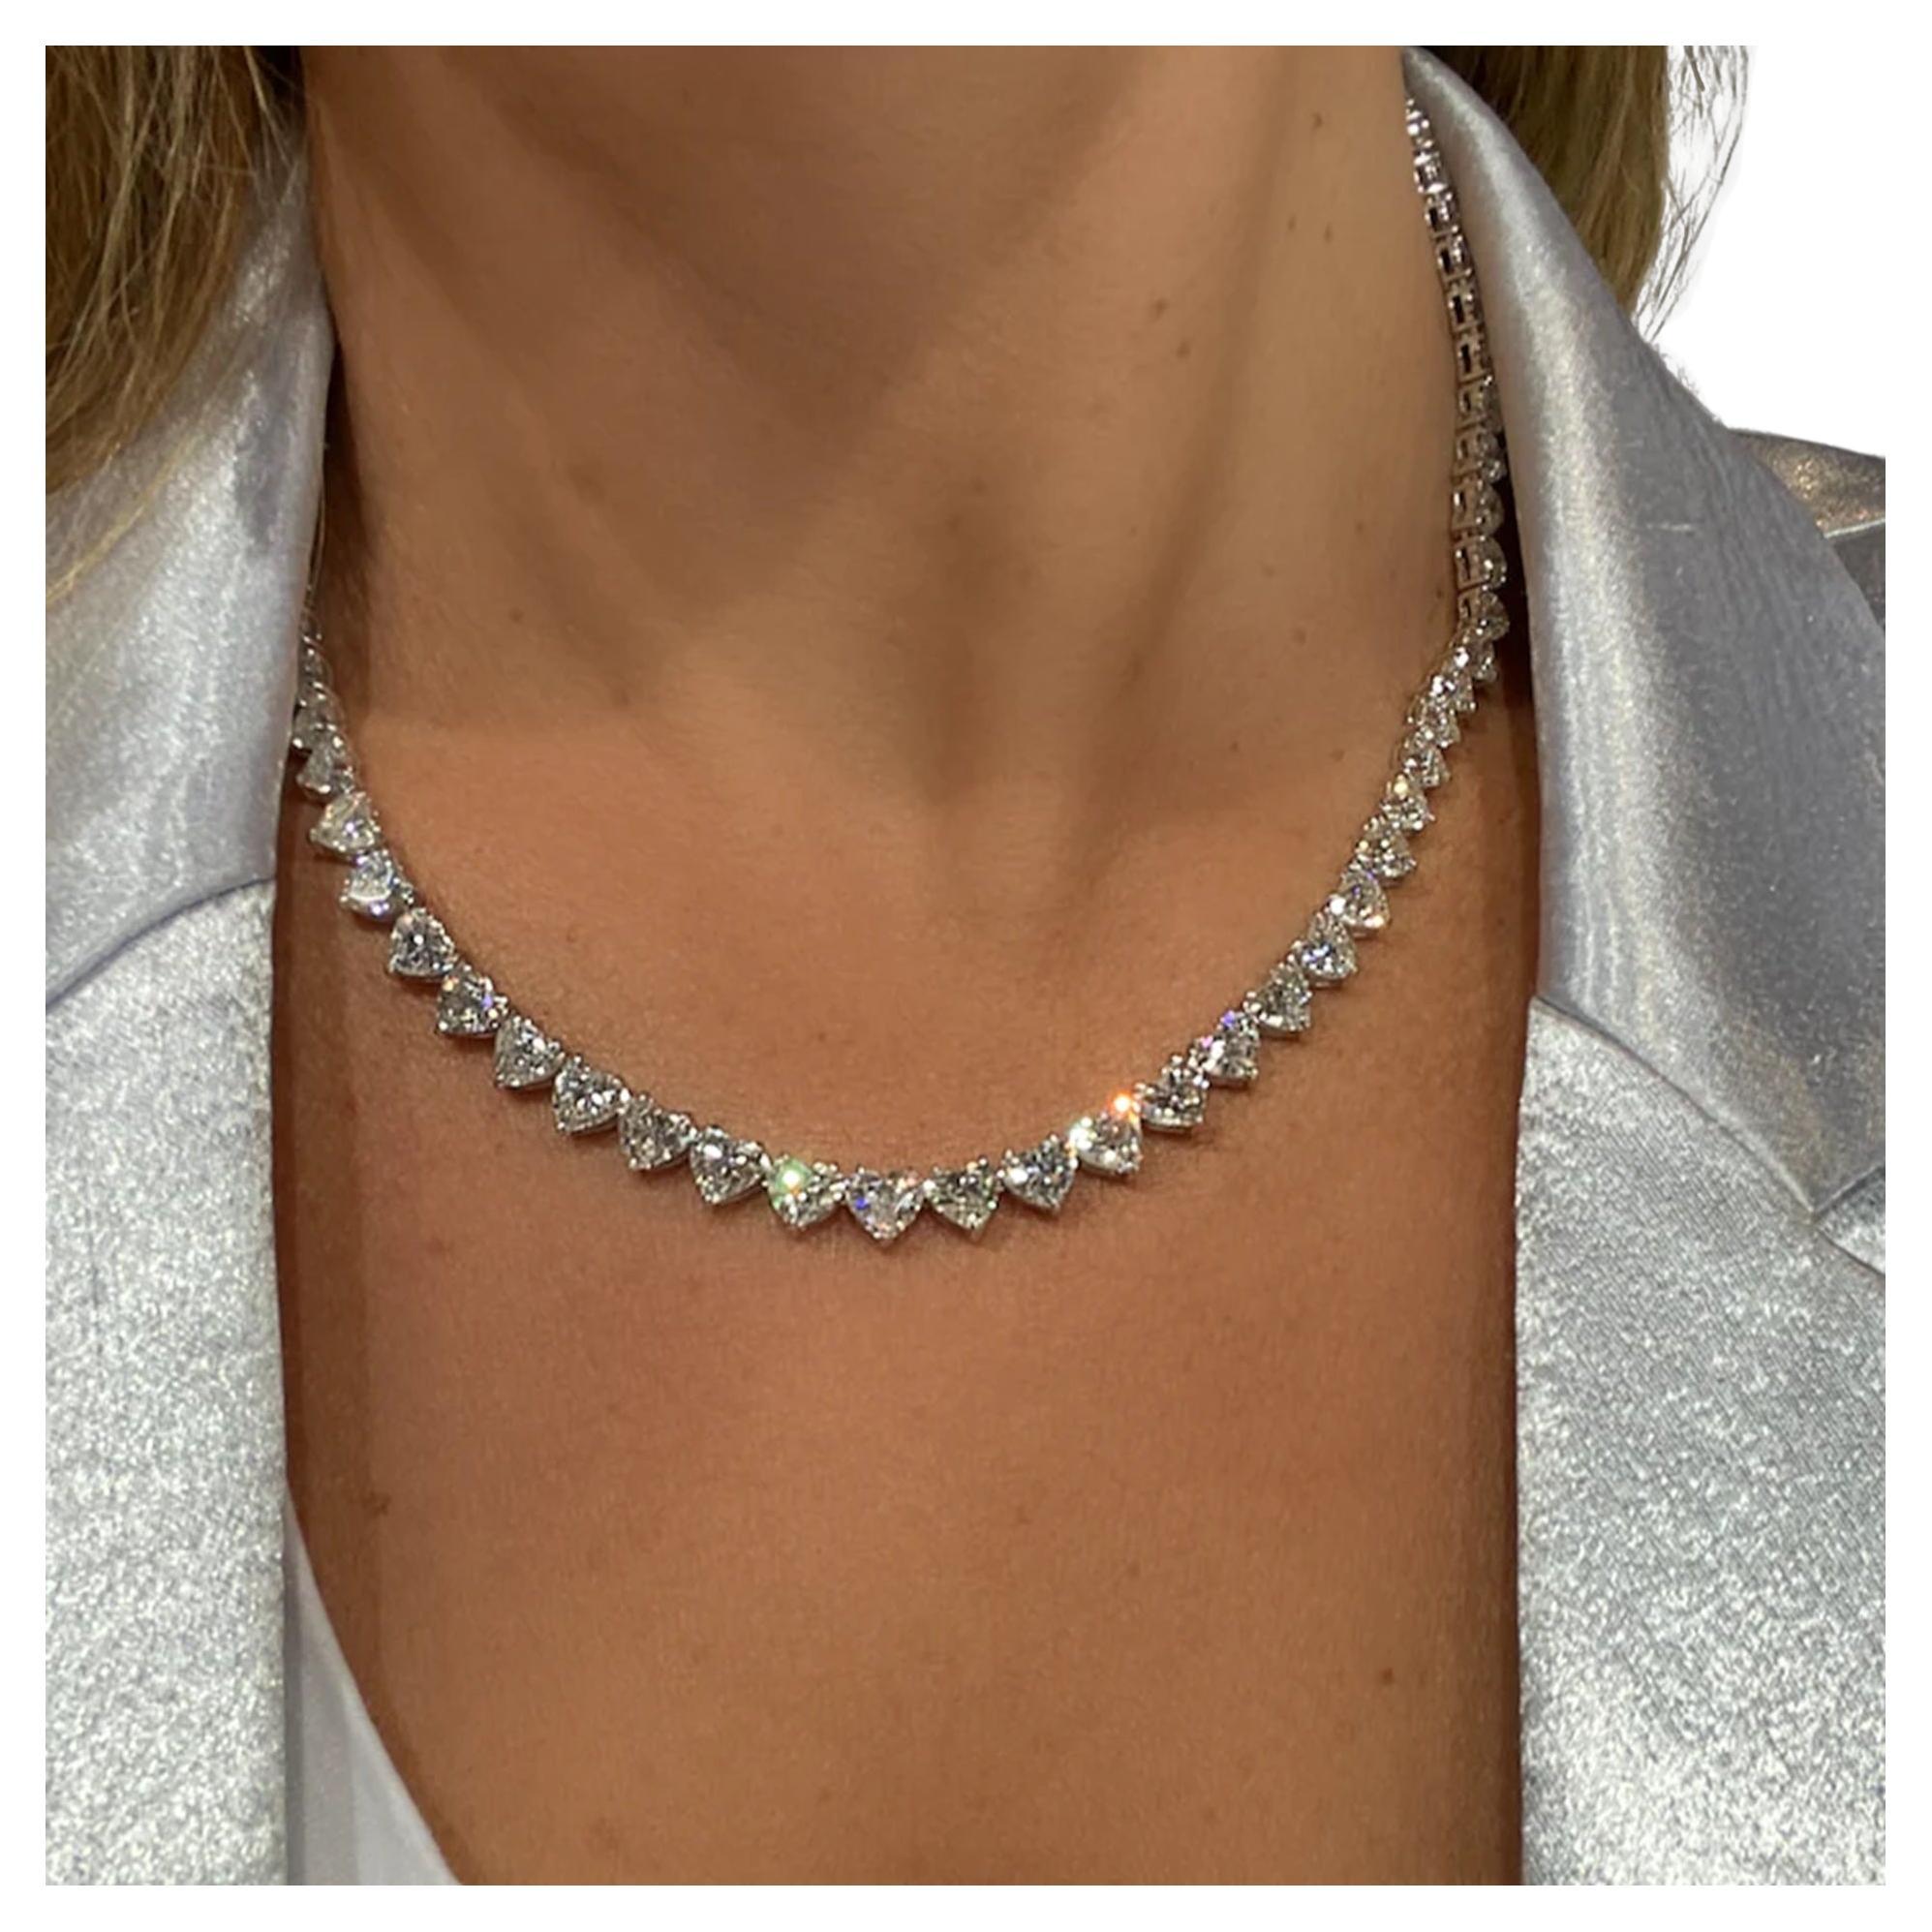 56 carat diamond necklace